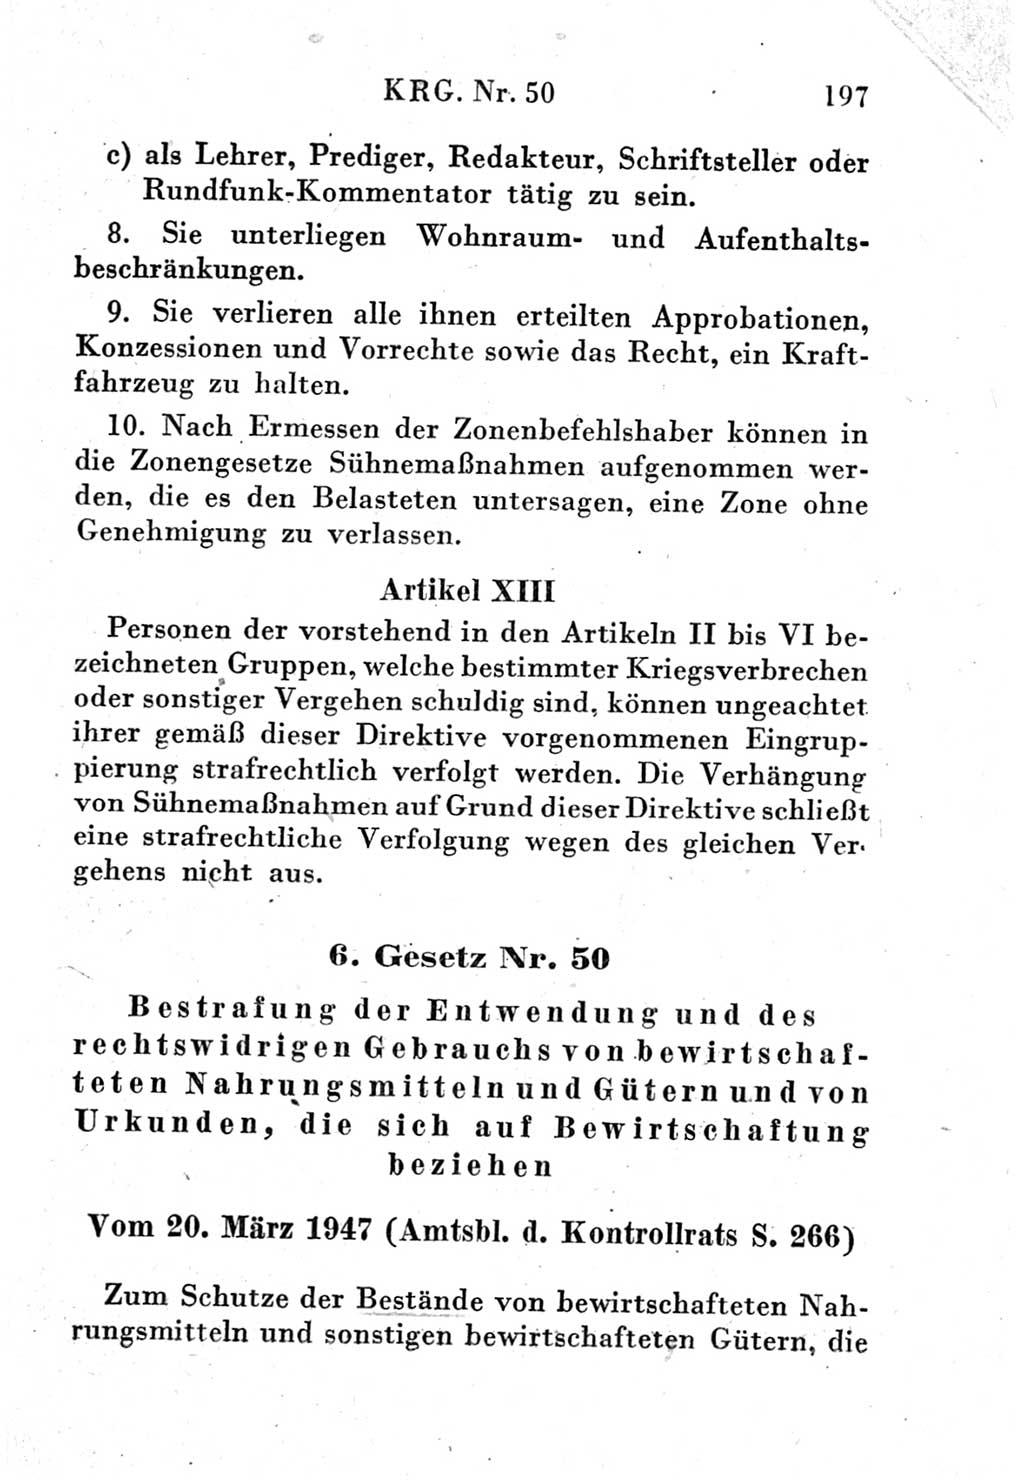 Strafgesetzbuch (StGB) und andere Strafgesetze [Deutsche Demokratische Republik (DDR)] 1951, Seite 197 (StGB Strafges. DDR 1951, S. 197)